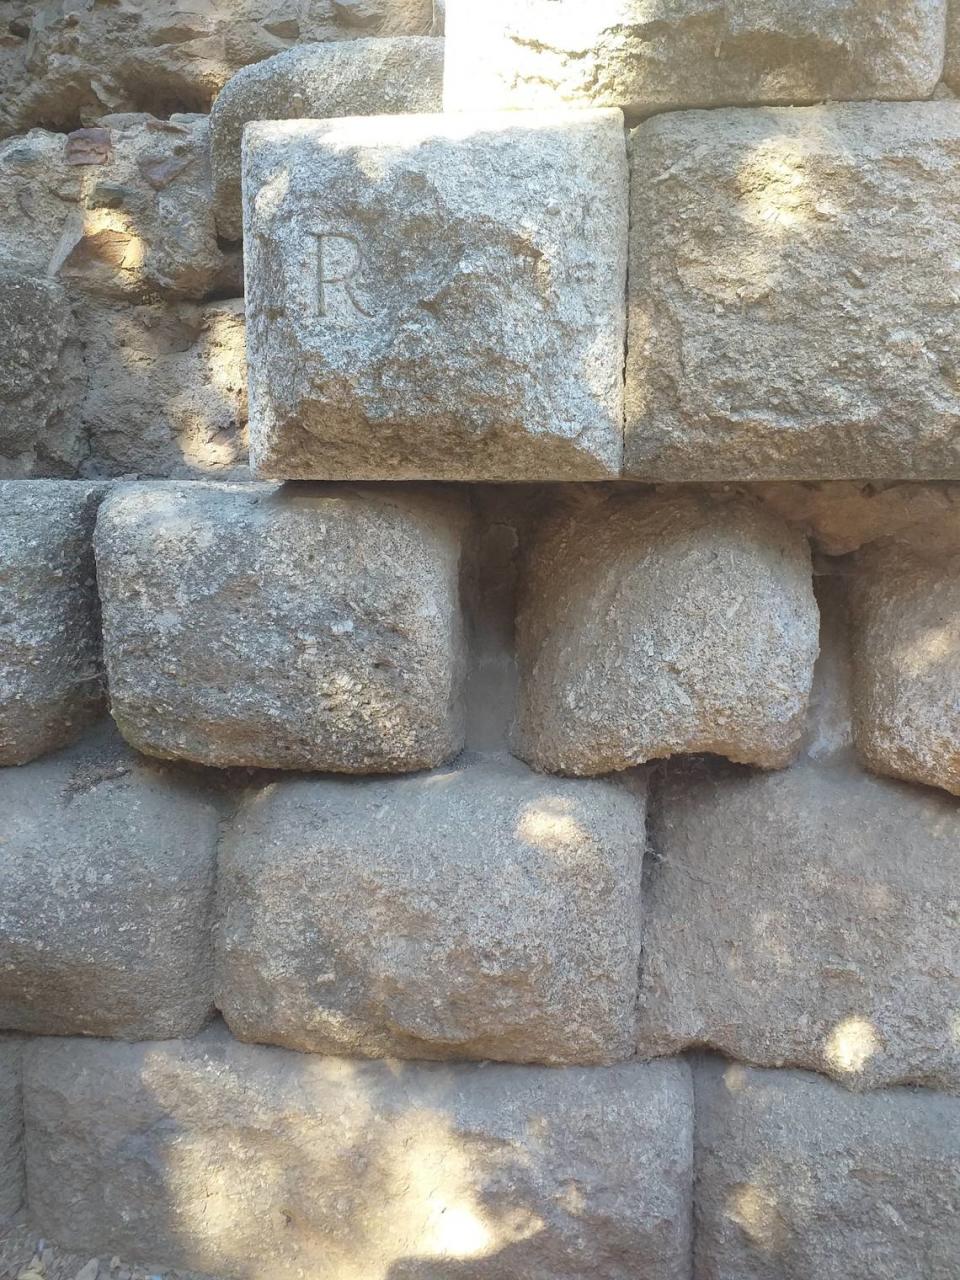 La letra R de la piedra significa que está restaurada. El resto, es el muro original del teatro romano.